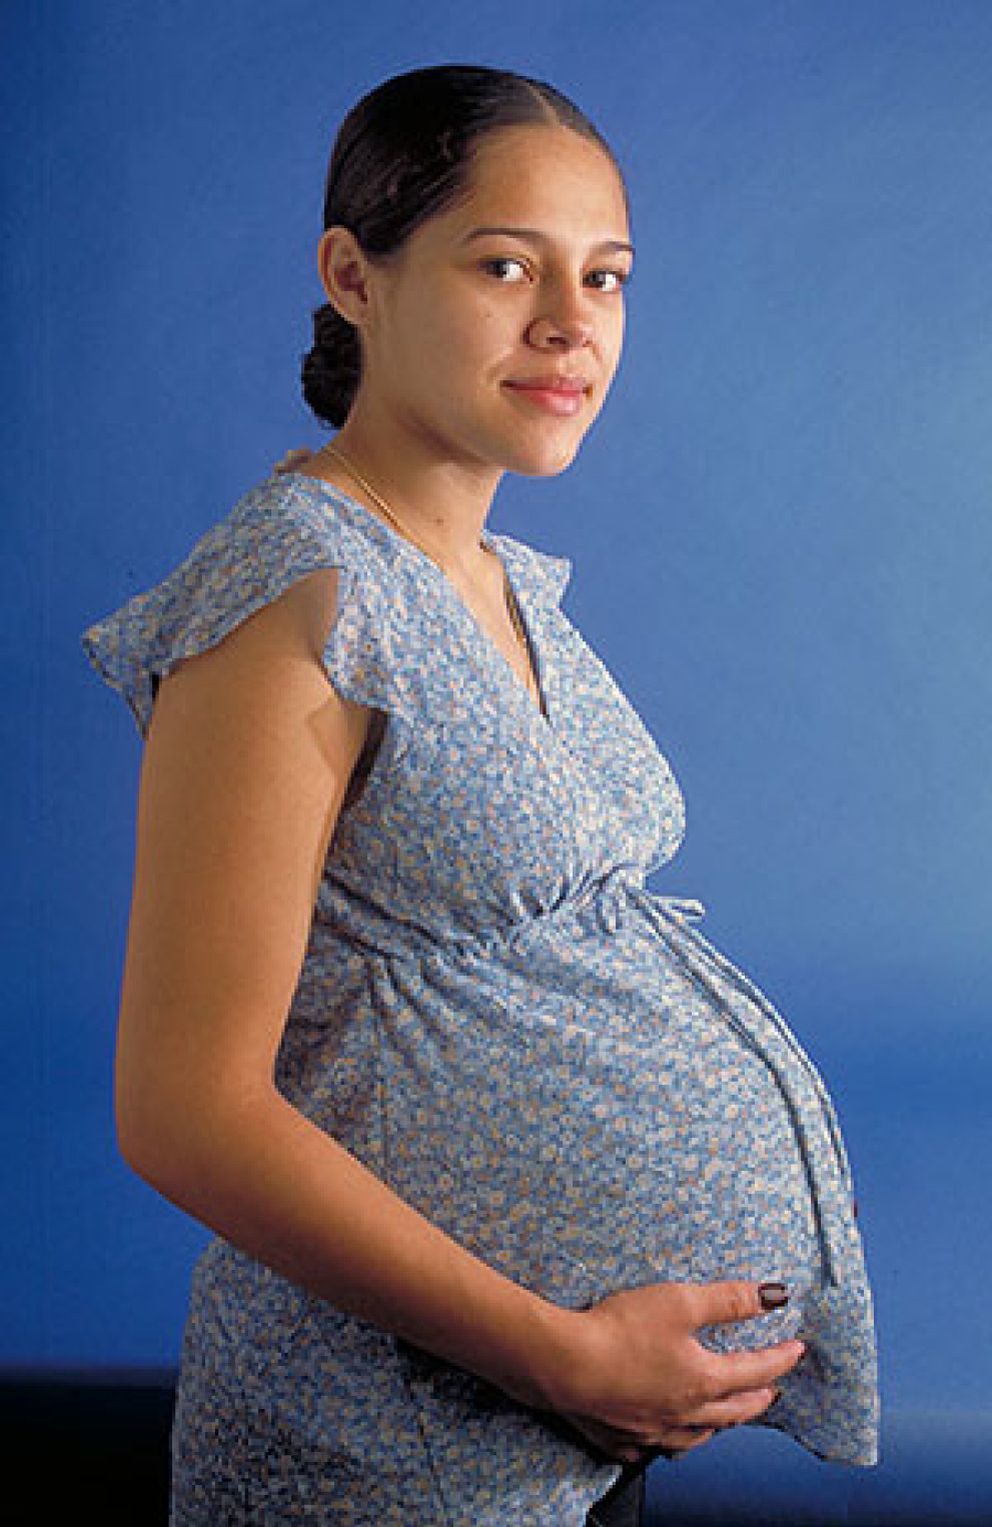 Foto: Hacer dieta a menudo lleva a engordar más durante el embarazo